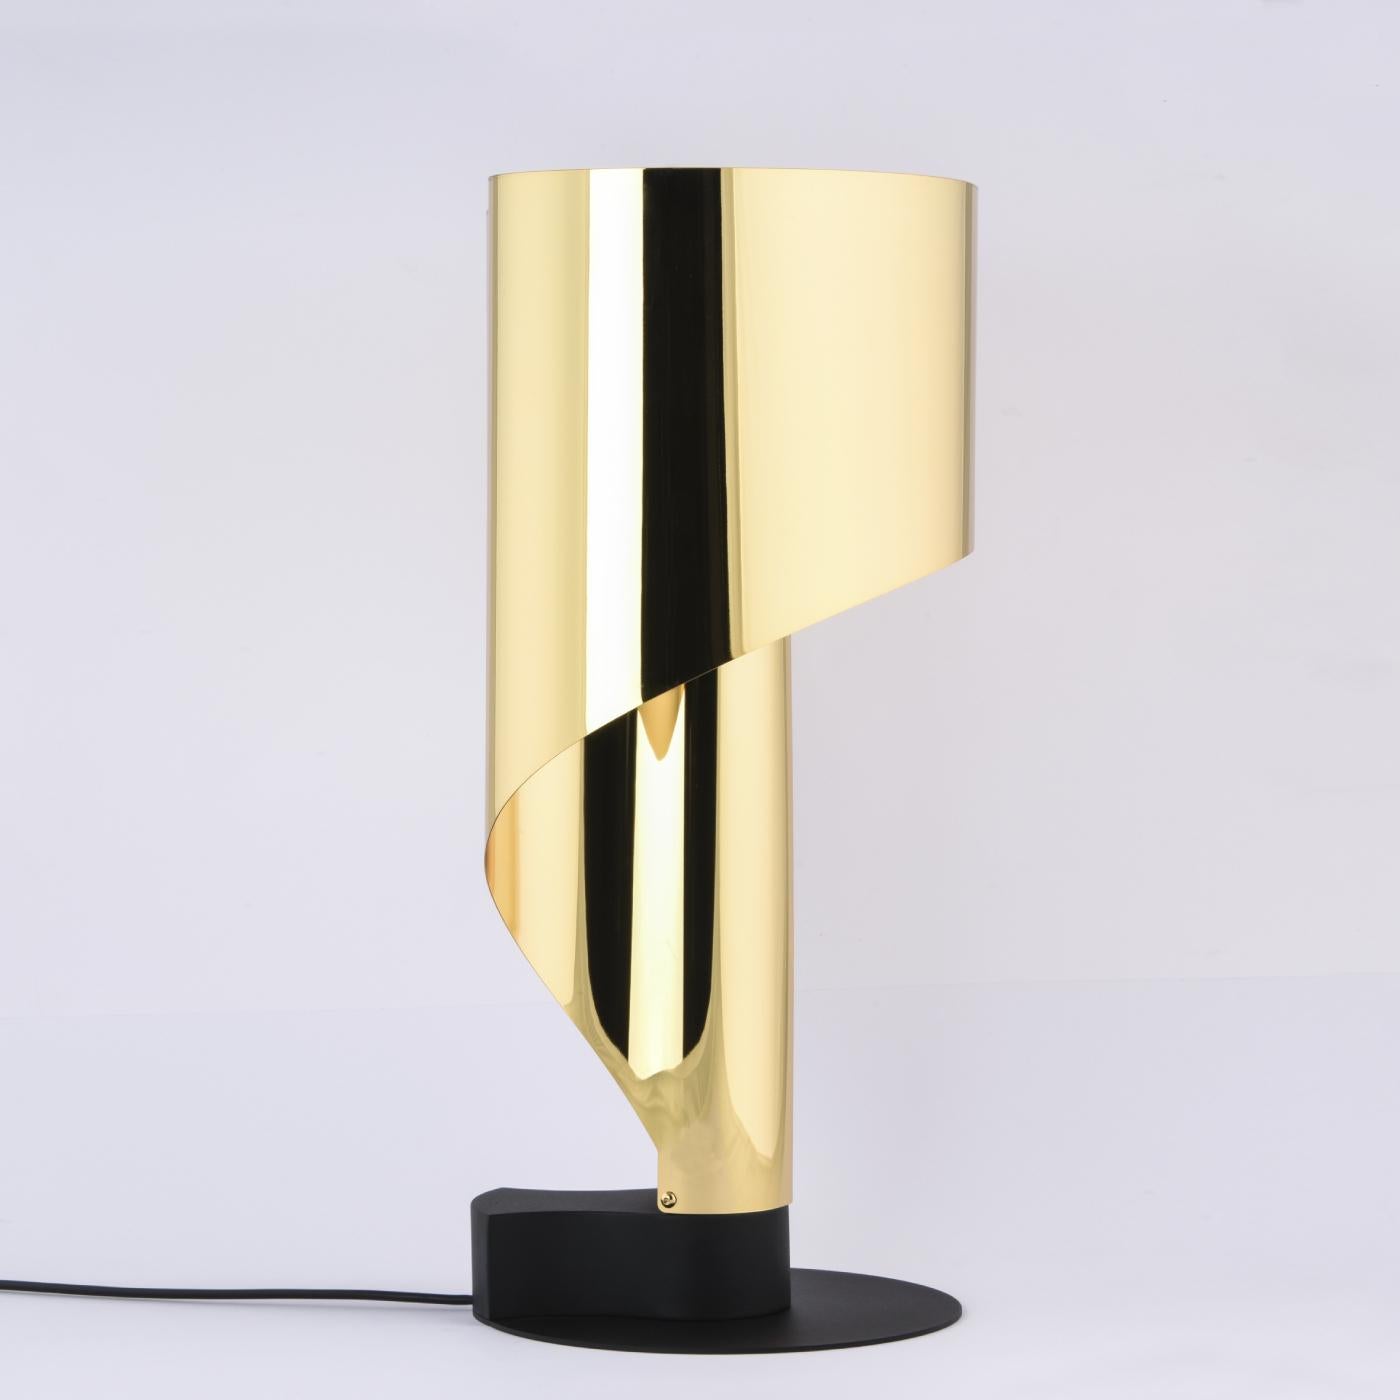 Die unverwechselbare, von Corsini und Wiskemann entworfene Leuchte wurde aktualisiert und ist auch in den Versionen aus brüniertem Stahl und Gold erhältlich.